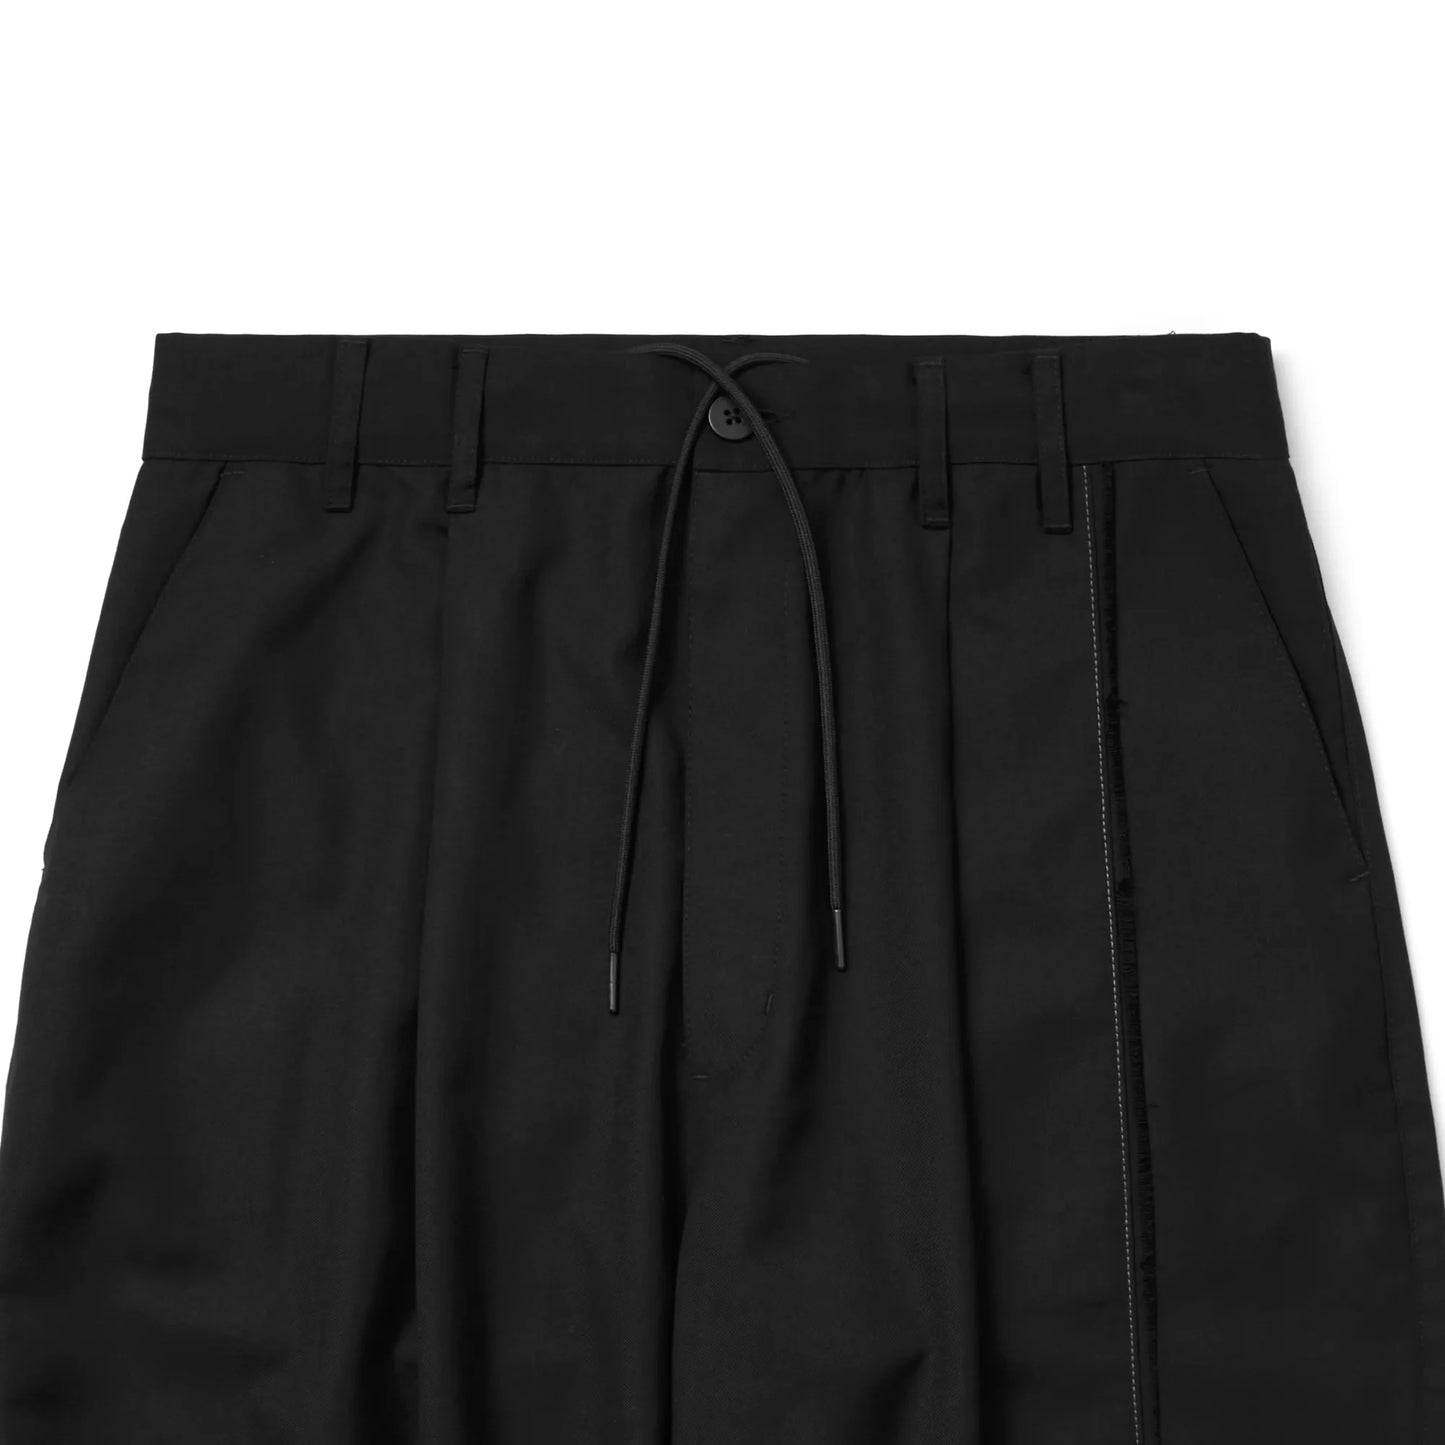 Melsign - Steamline M Trousers - Black